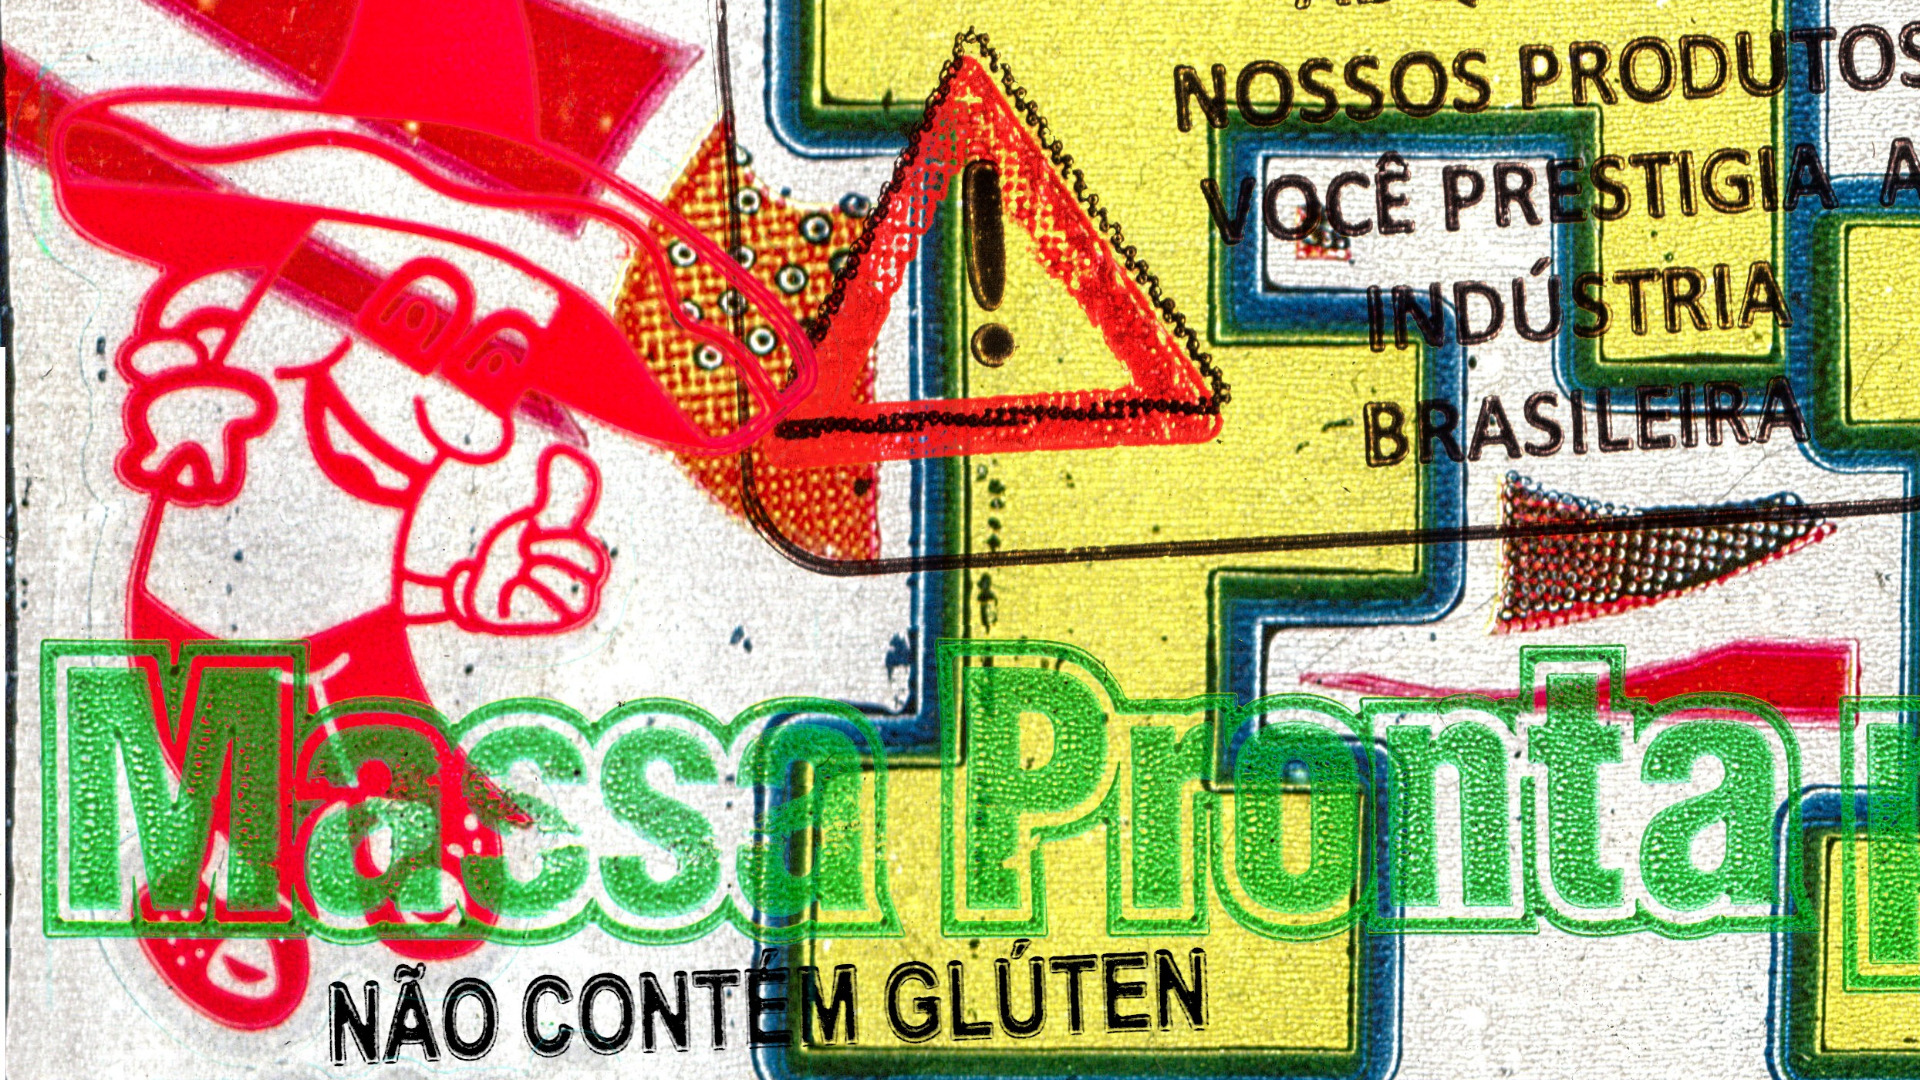 Detalhe da arte principal com destaque para a figura de um geladinho com um chapéu típico de Mariachi. Algumas frases se destacam: "Você prestigia a indústrias brasileira", "Massa Pronta", "Não contem glútem".